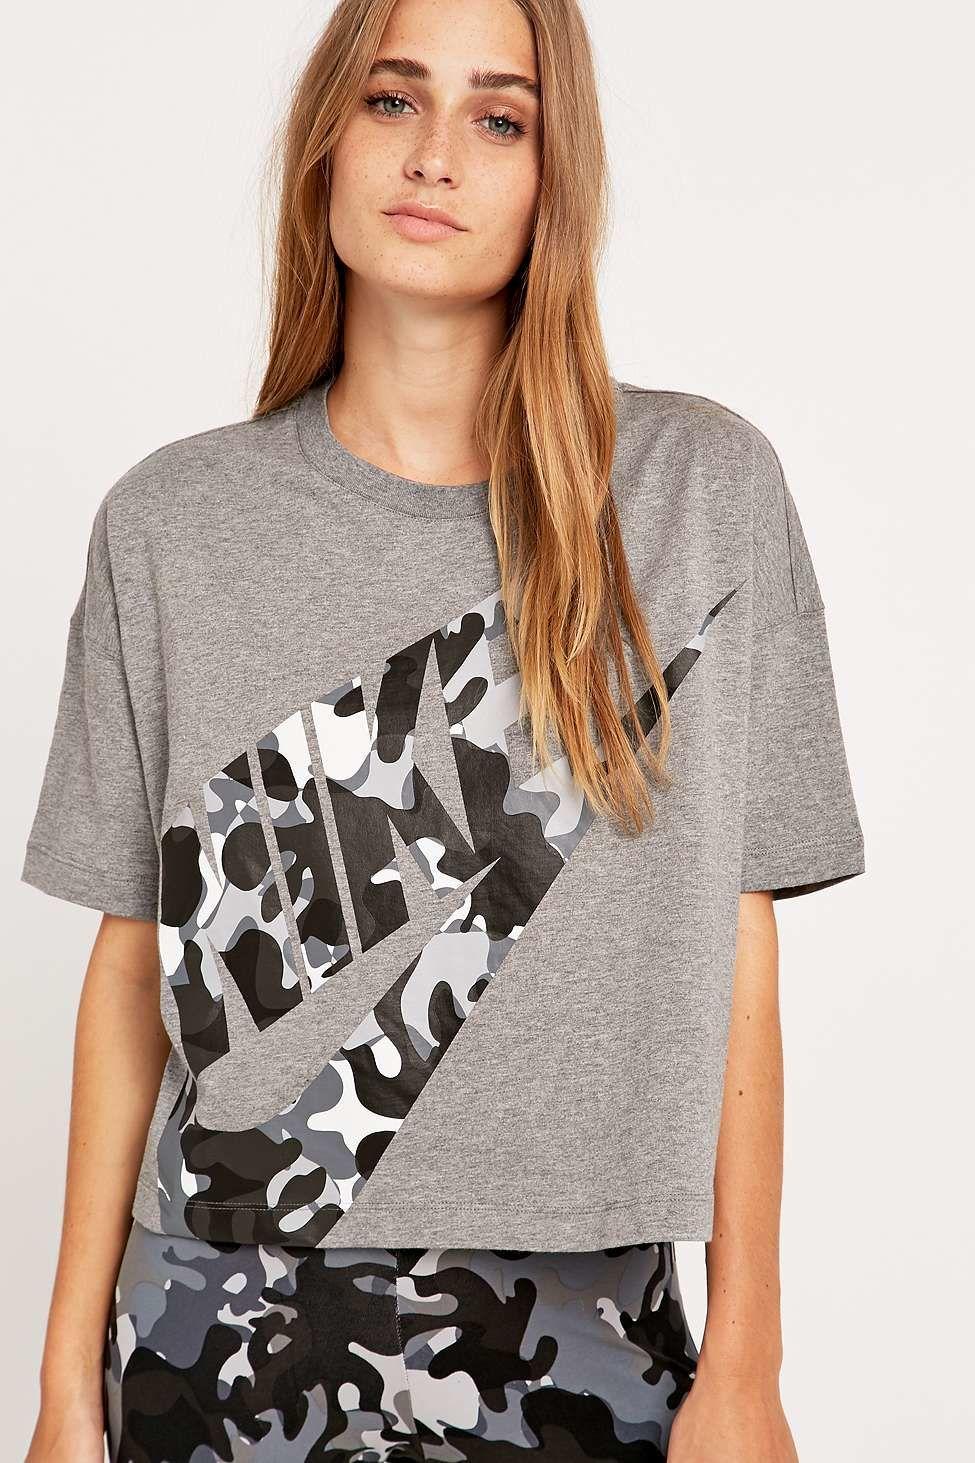 Nike Gray Camo Logo - Nike Camo Logo Cropped Grey T-shirt in Gray - Lyst